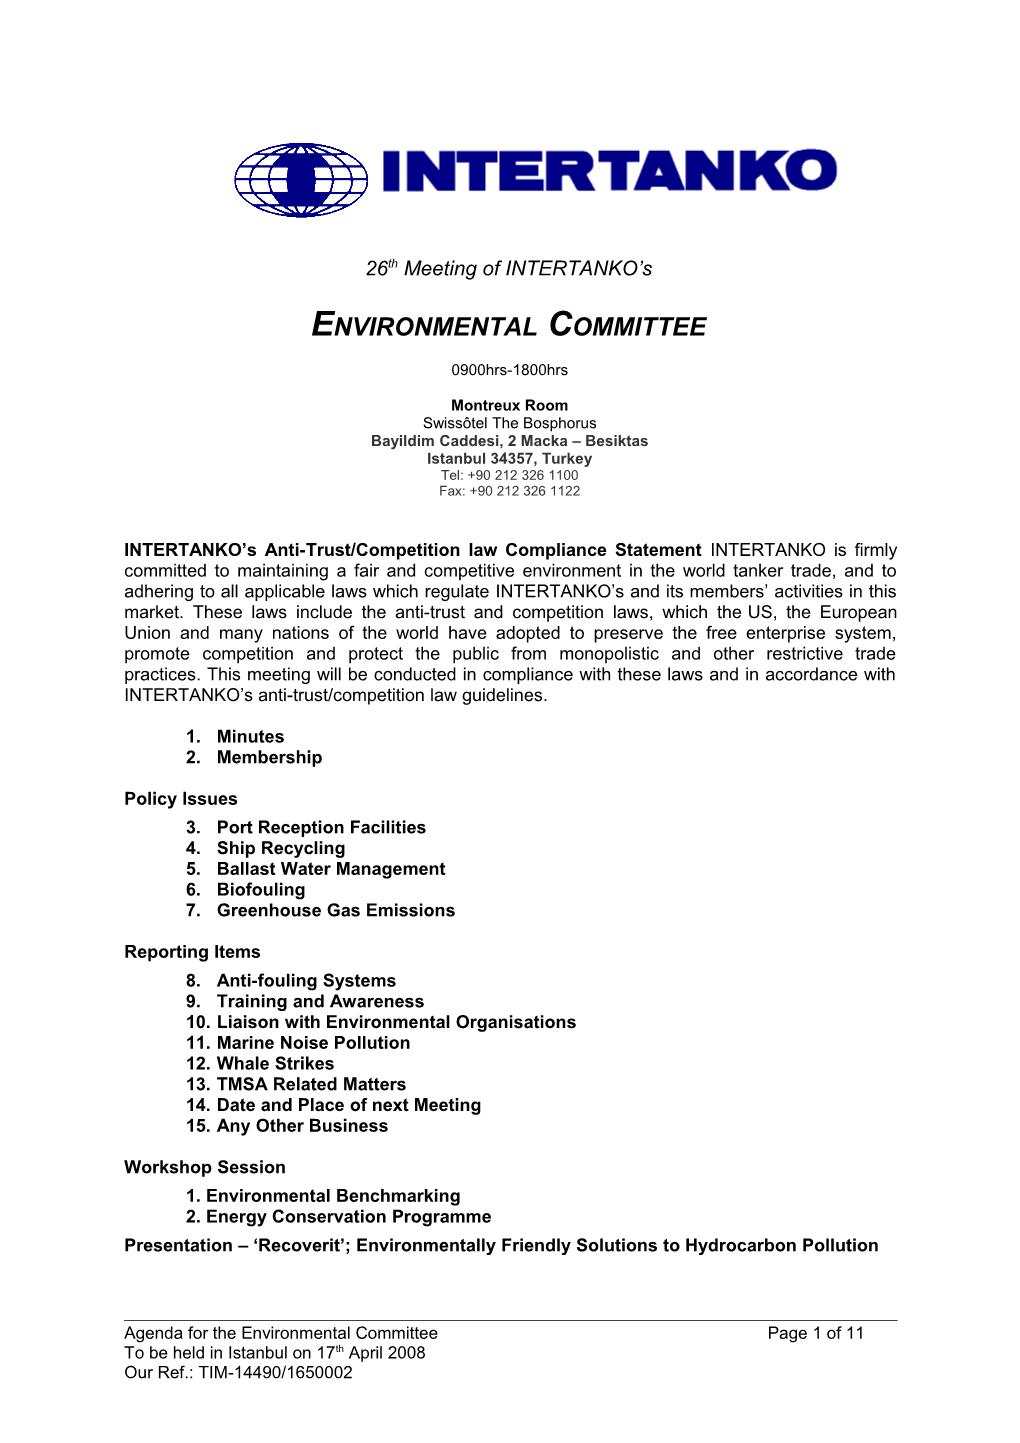 Environmental Committee